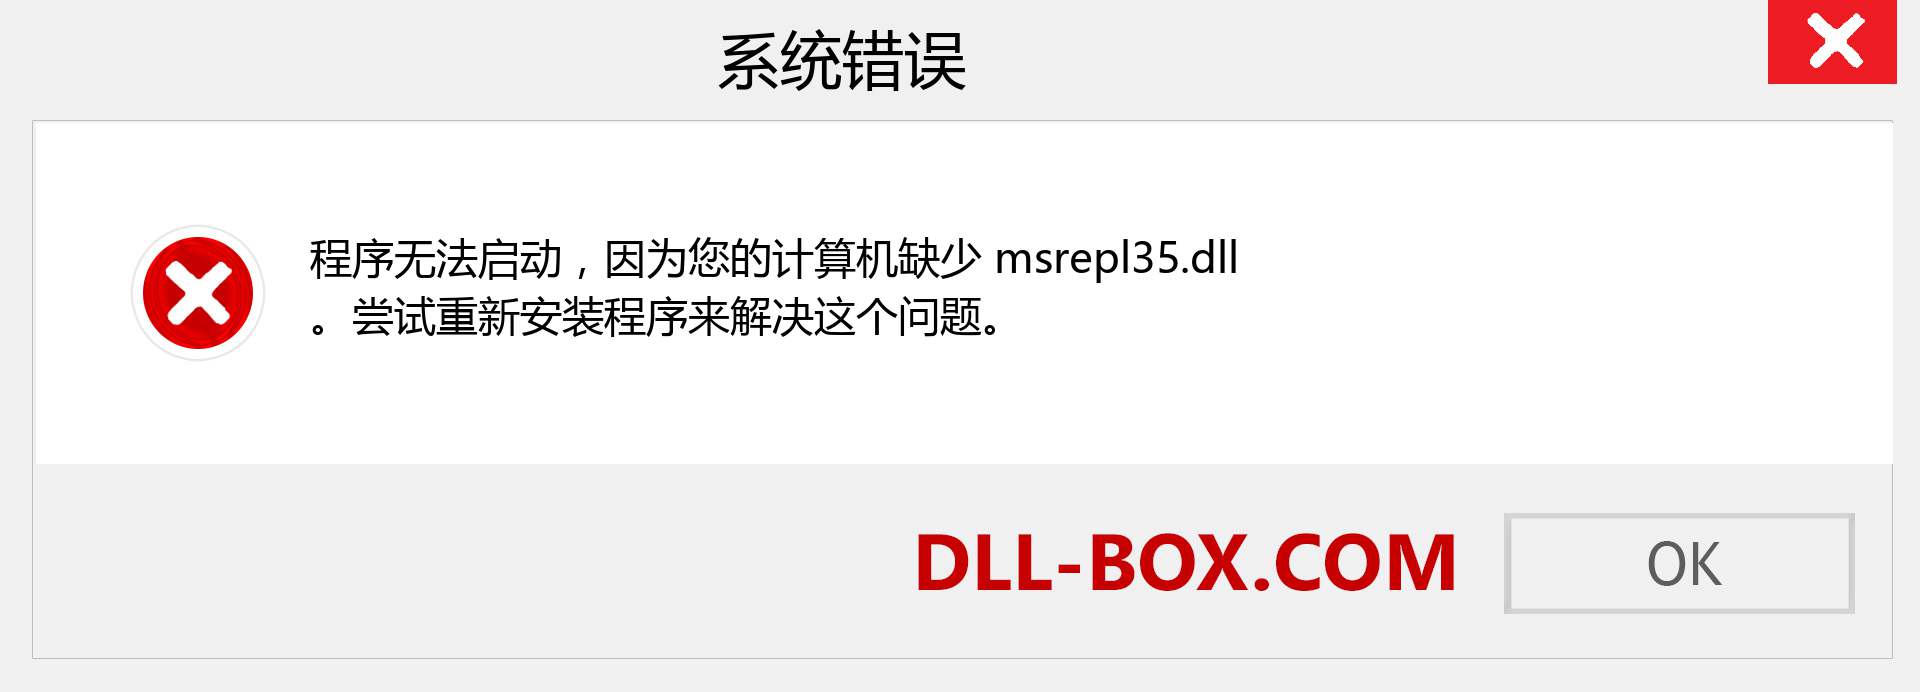 msrepl35.dll 文件丢失？。 适用于 Windows 7、8、10 的下载 - 修复 Windows、照片、图像上的 msrepl35 dll 丢失错误